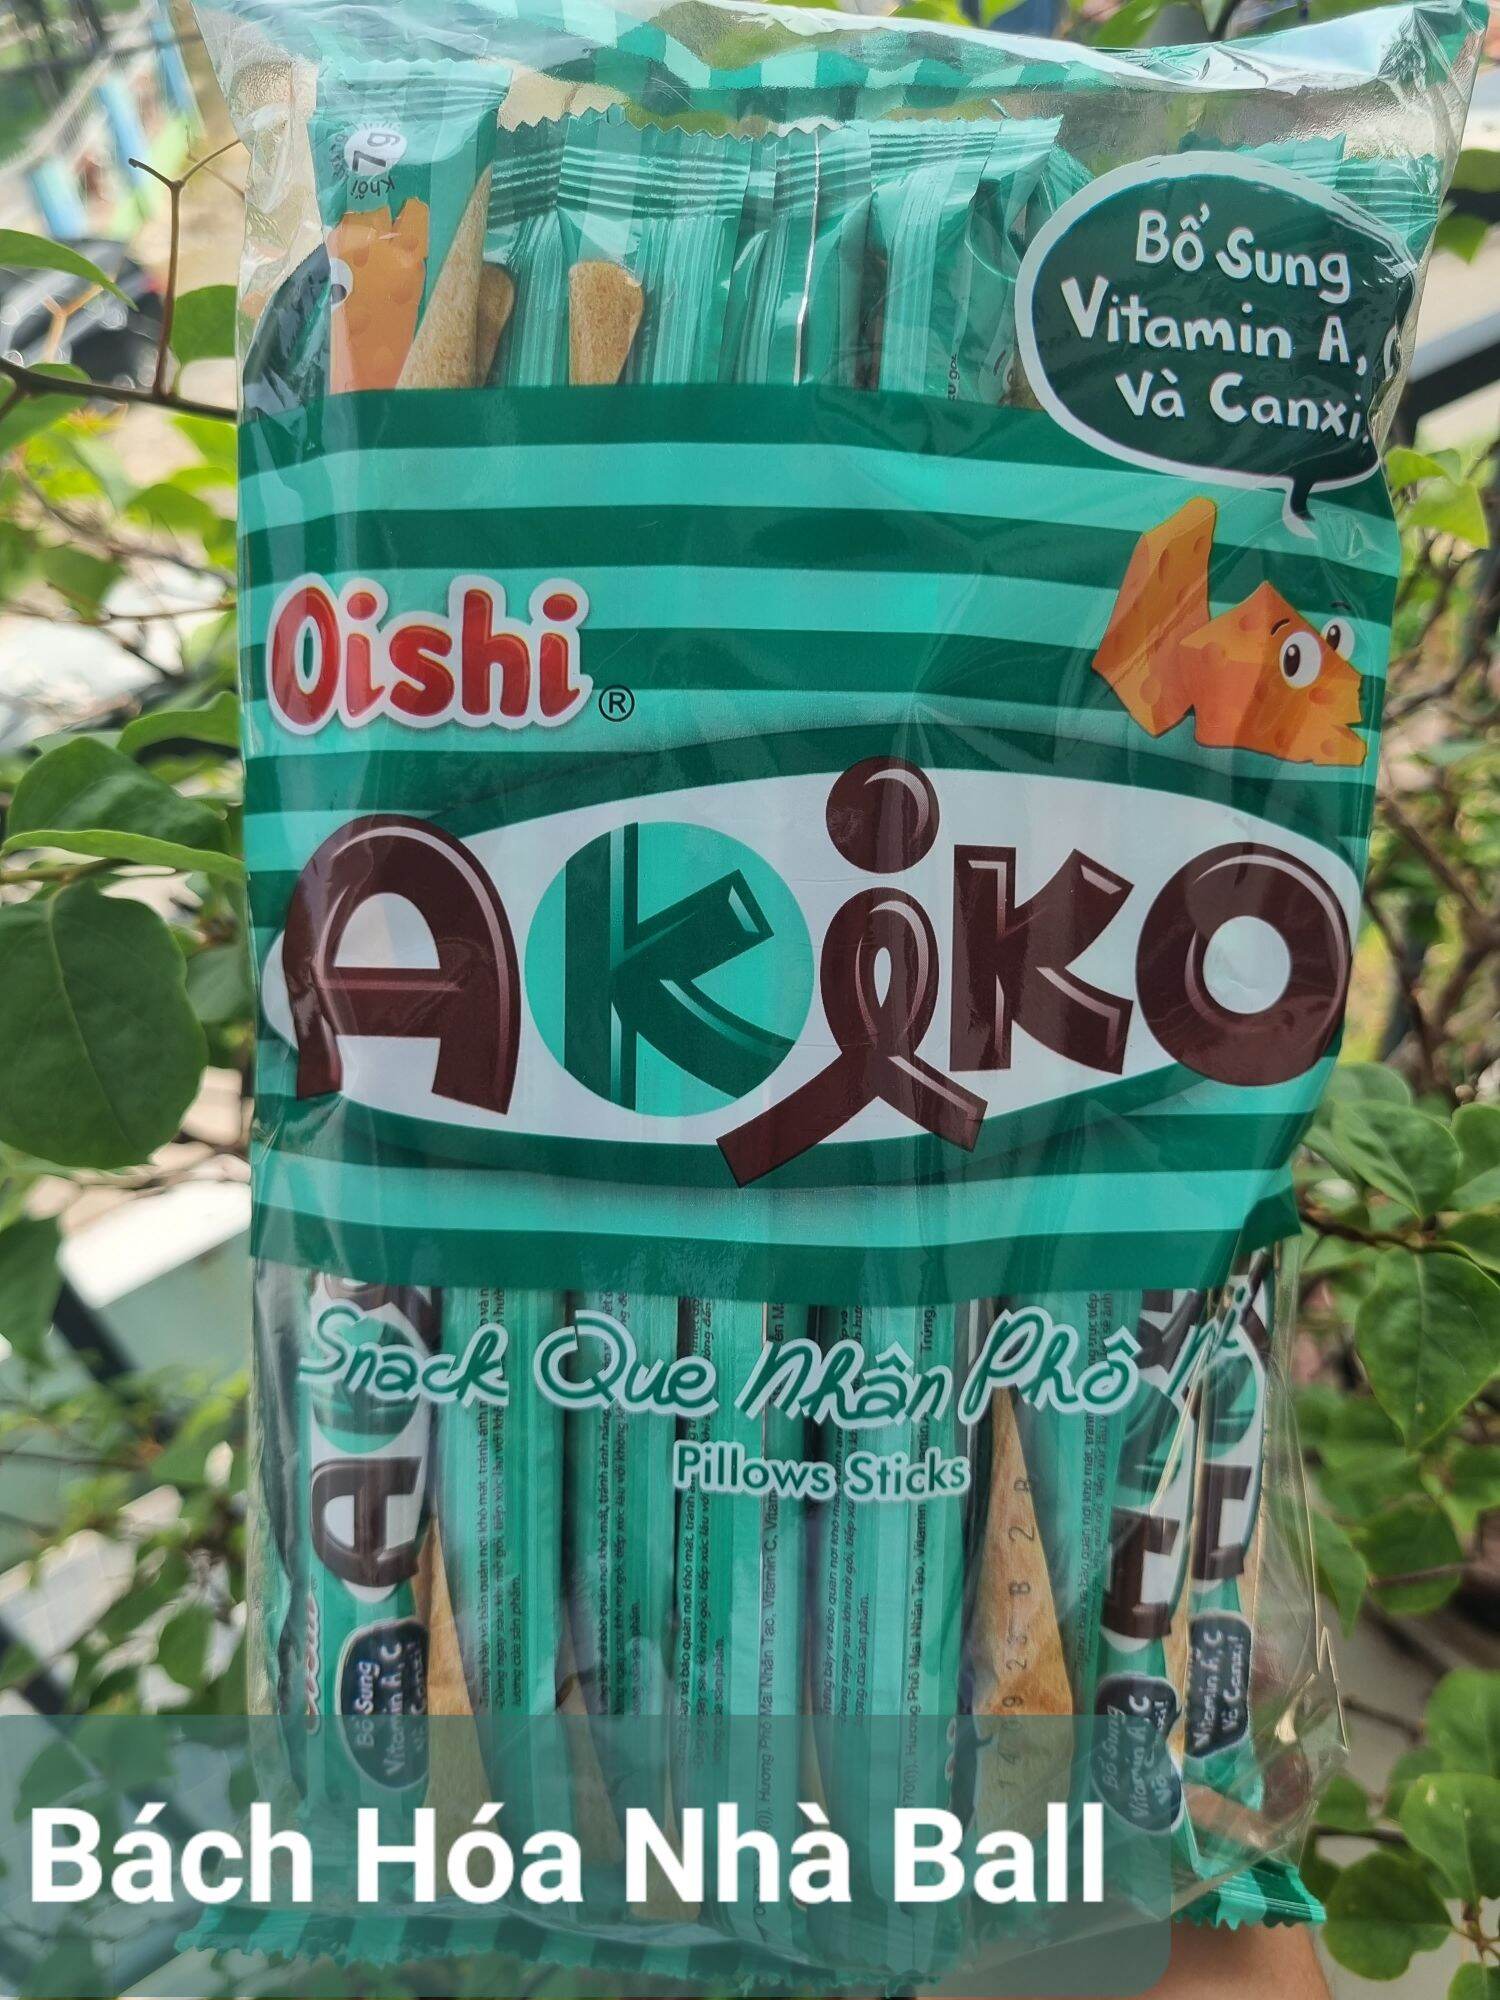 Snack que Oishi Akiko hương phô mai 160g